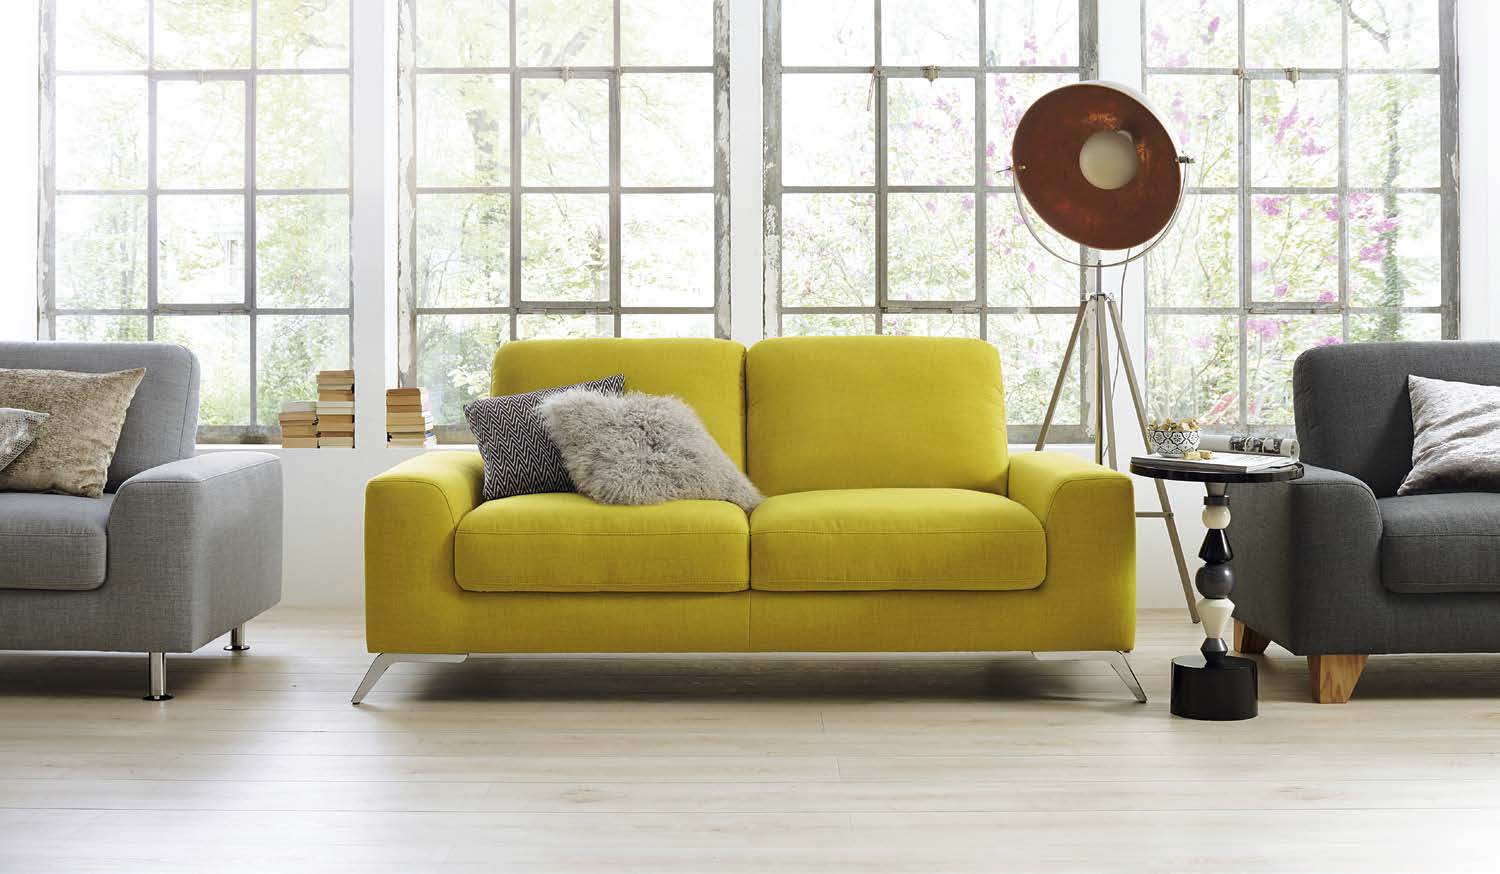 Global 7150 Ein Sofa, viele Farben, aber nur ein Preis Global 7150 2,5-Sitzer in vielen Trendfarben für je 698.